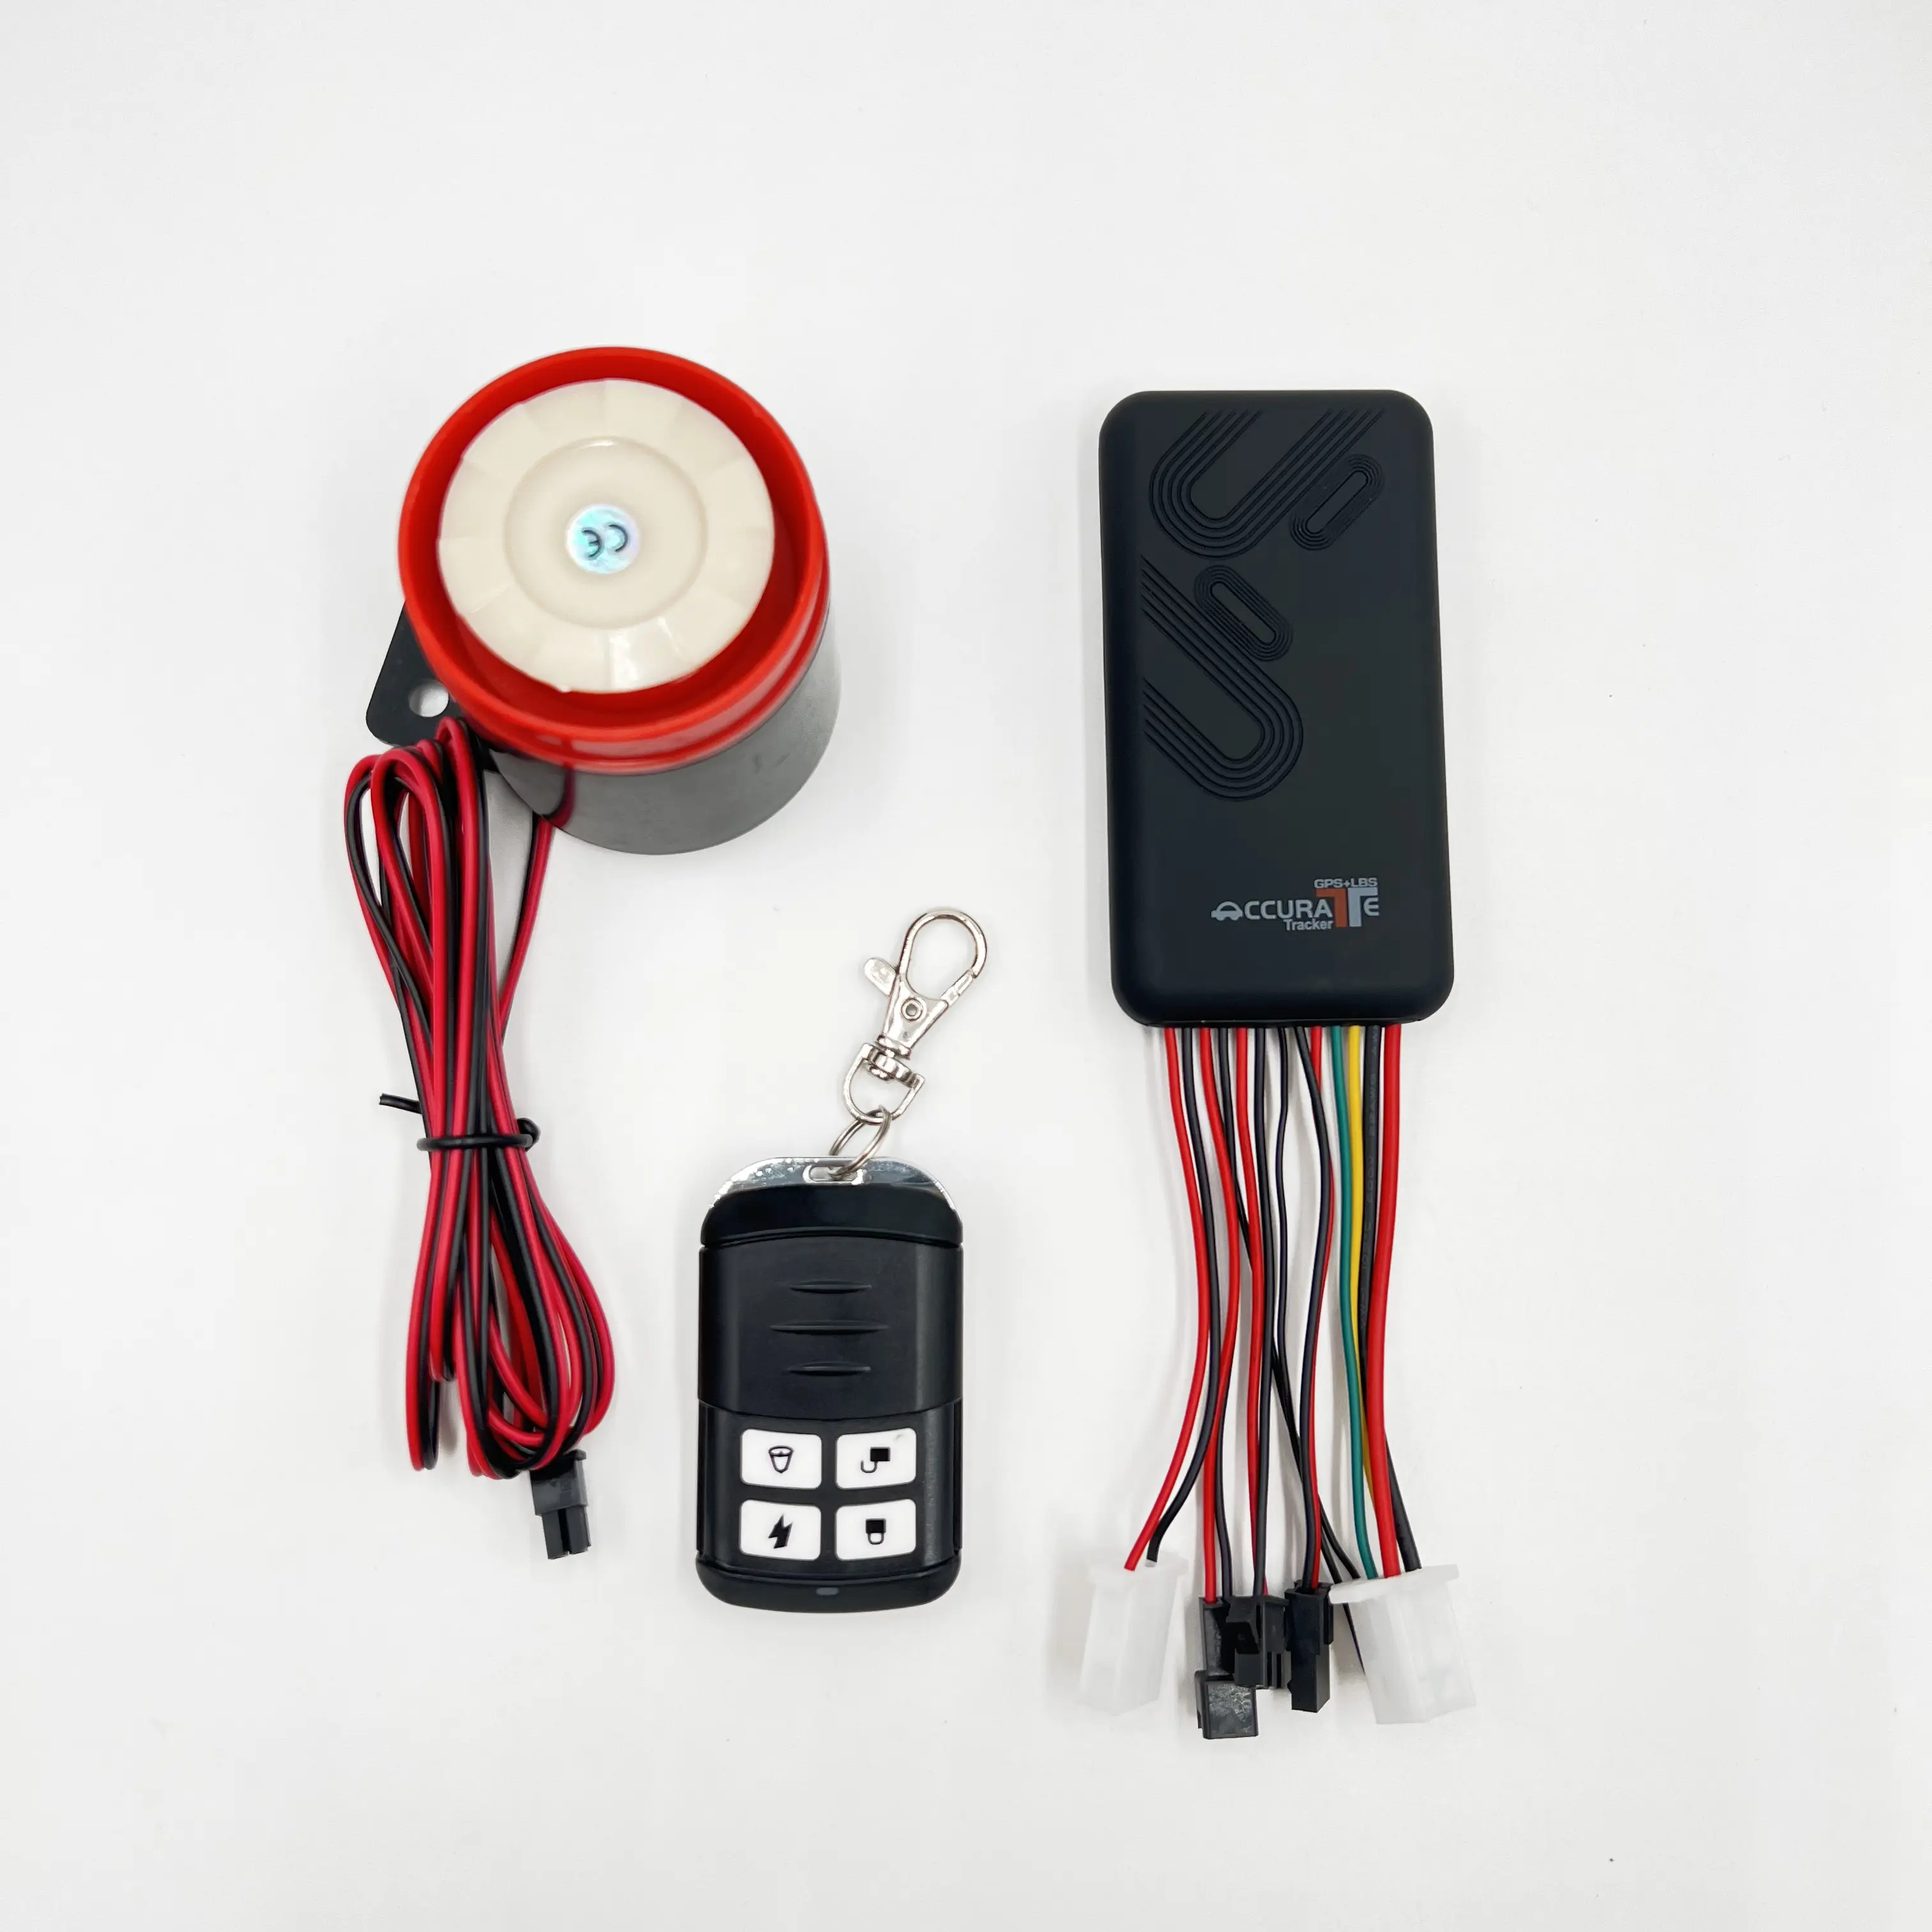 อุปกรณ์ติดตามยานพาหนะด้วยระบบดาวเทียมในรถยนต์ GT06รีโมทคอนโทรลแบบปุ่มเดียว2G ตัวติดตาม GPS มอเตอร์ไซค์ป้องกันการโจรกรรม secumore PLUS app ฟรี